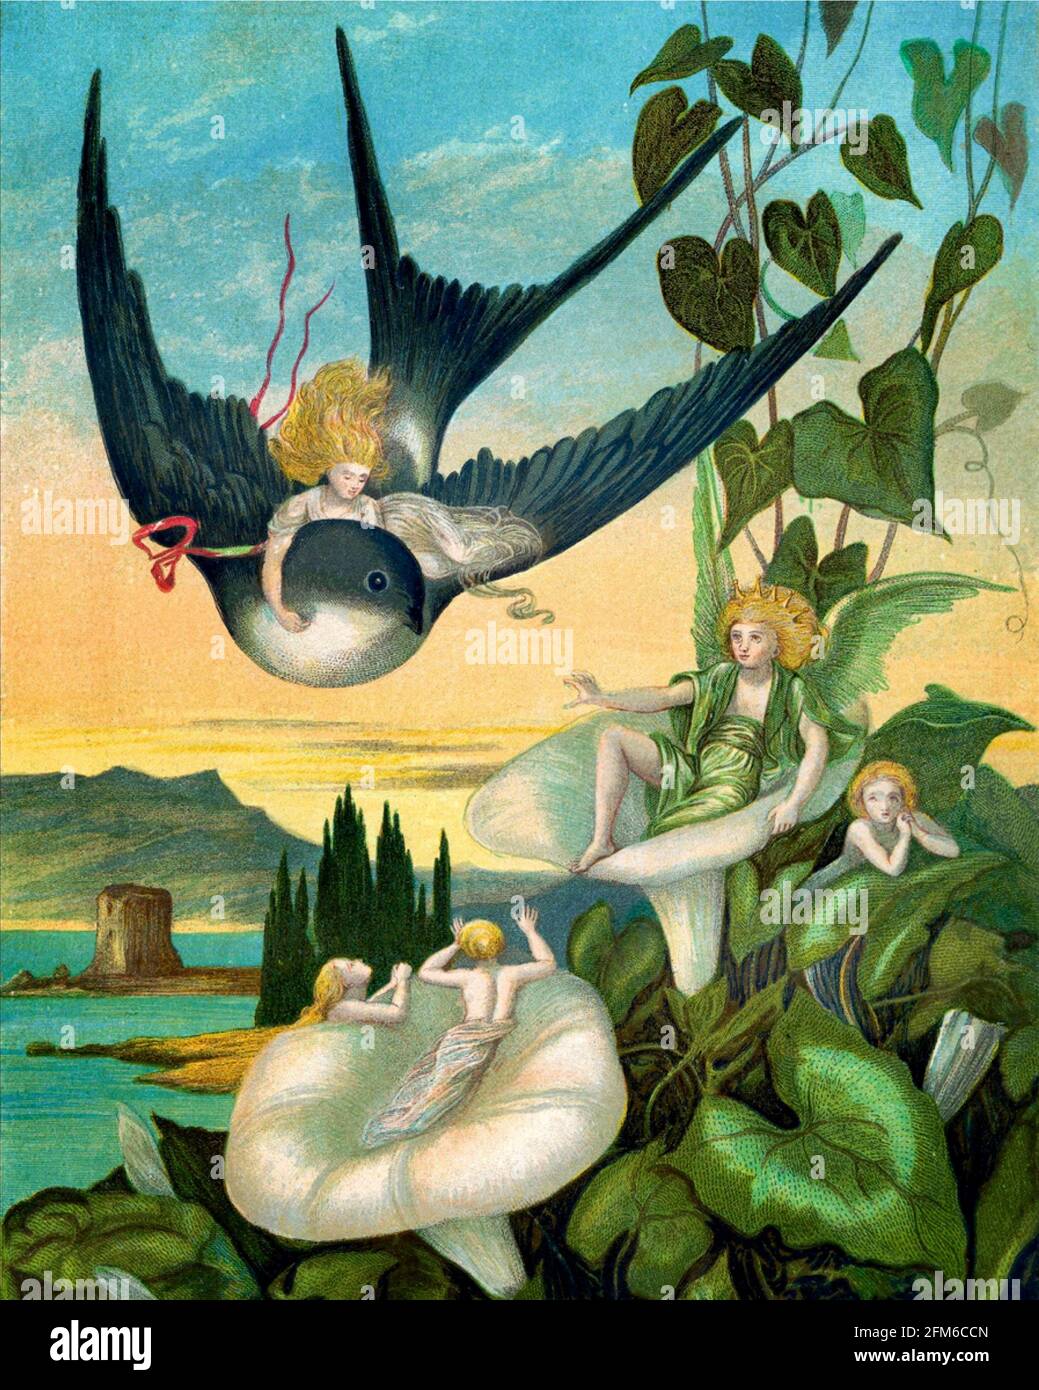 Eleanor Vere Boyle art - Thumbelina - 'Tommelise porté sur le Swallow de retour au Sud, où elle voit la Fée Fleur-Prince. Banque D'Images